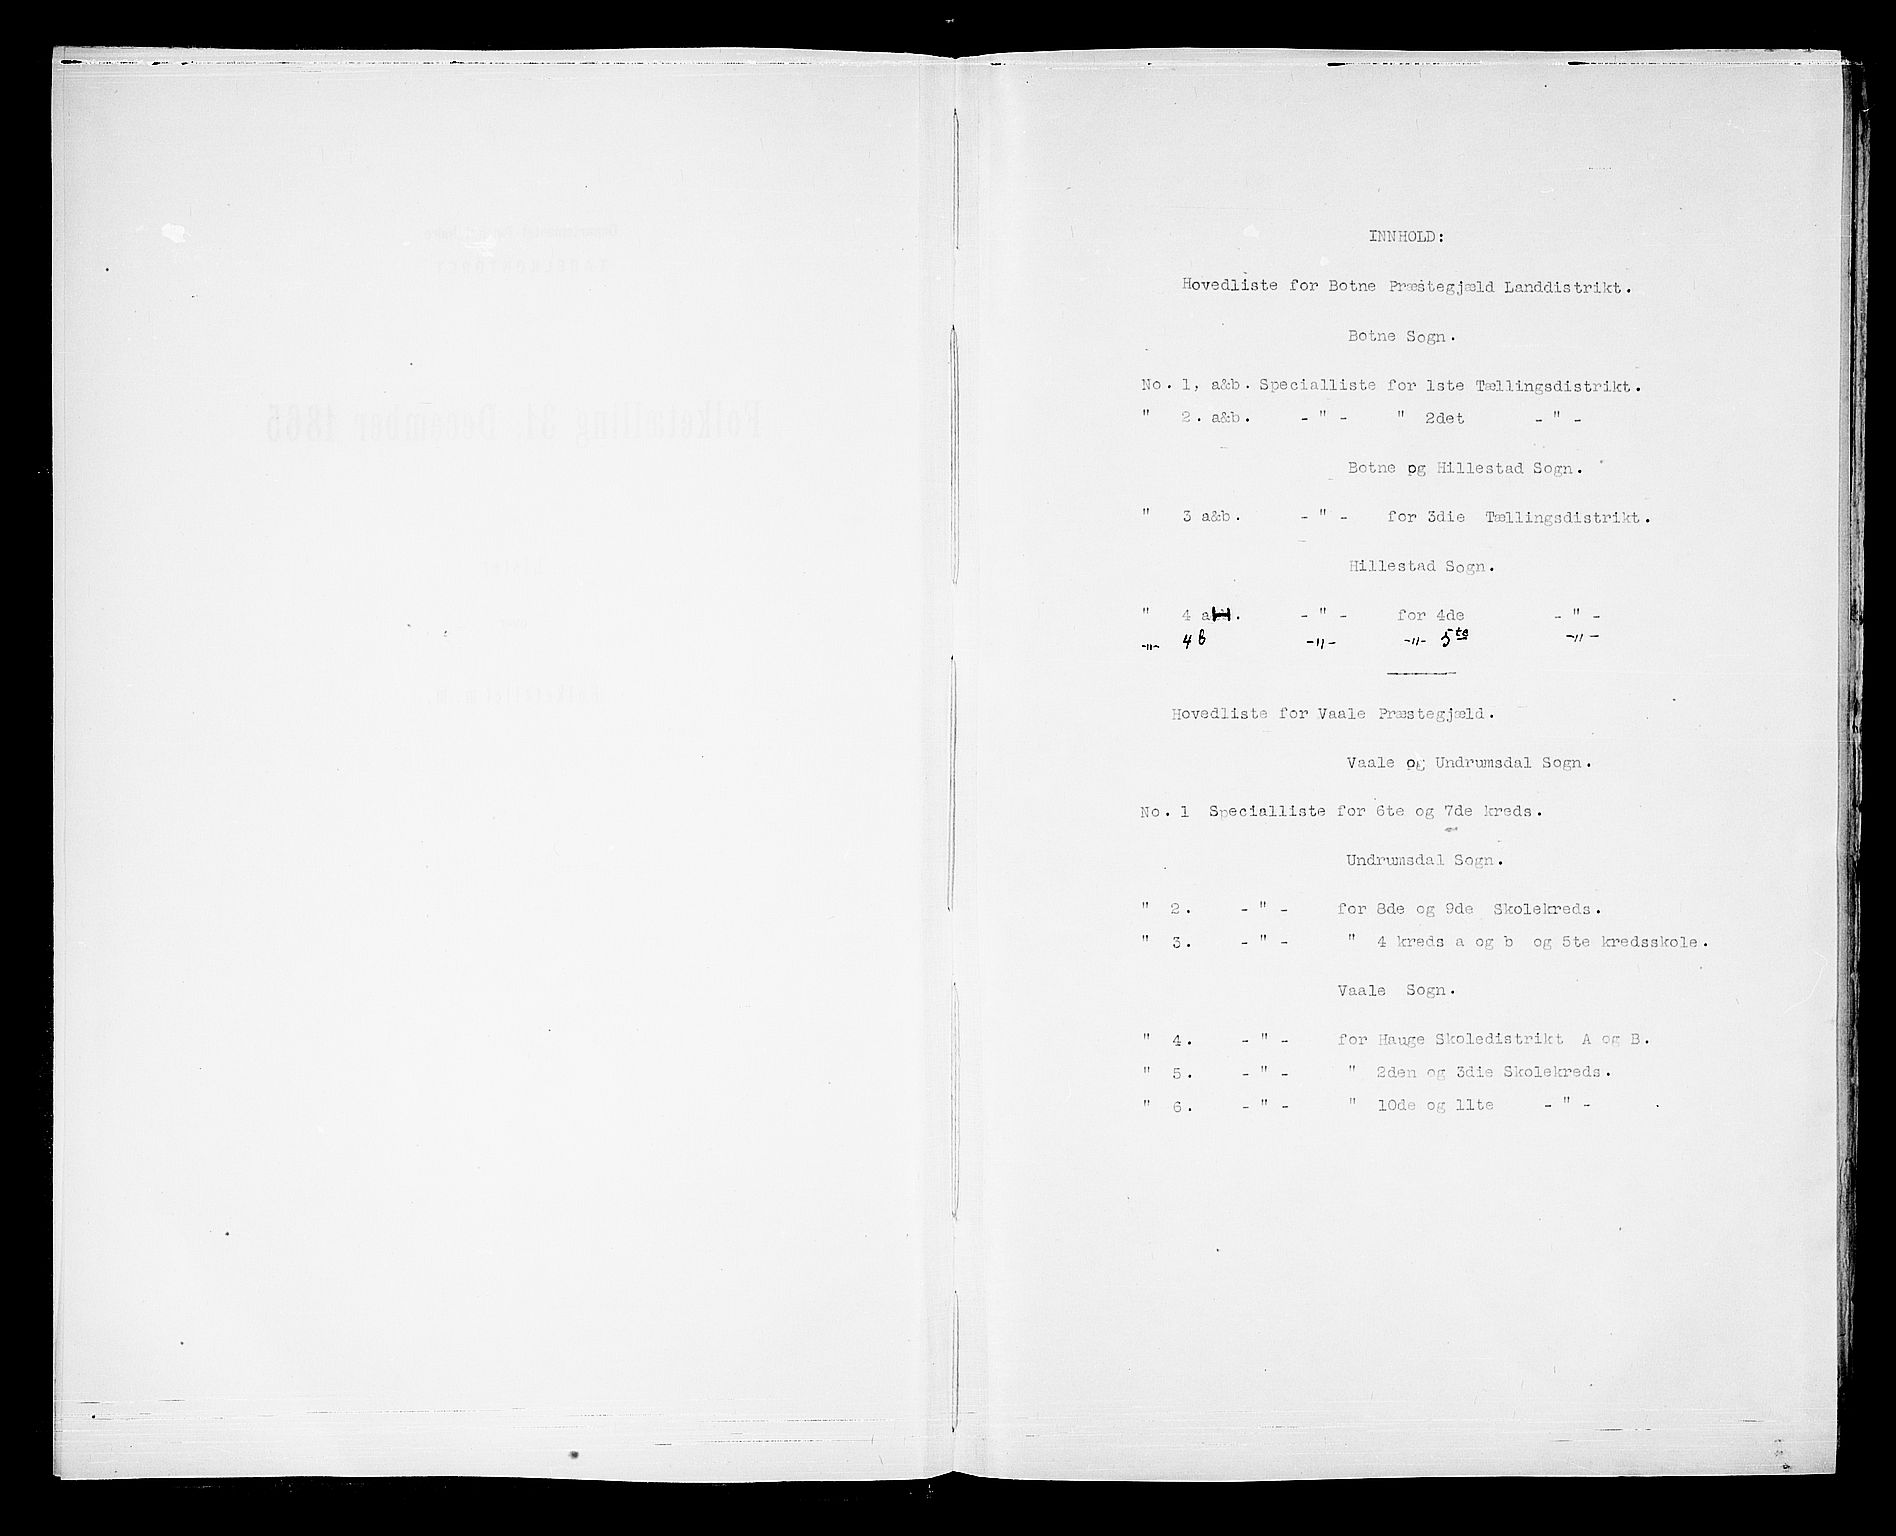 RA, Folketelling 1865 for 0715L Botne prestegjeld, Botne sokn og Hillestad sokn, 1865, s. 4